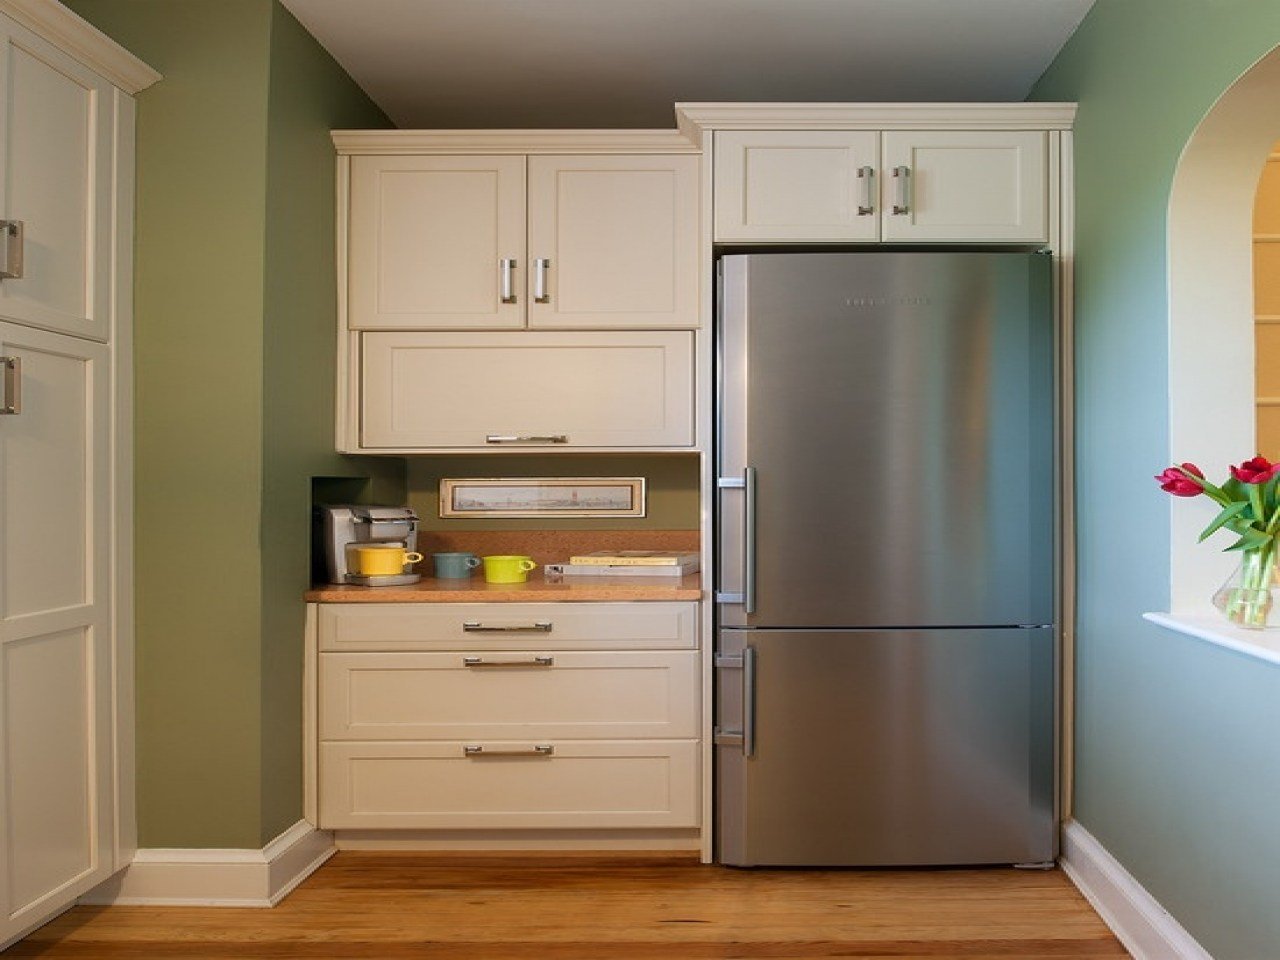 двойной холодильник в интерьере кухни фото